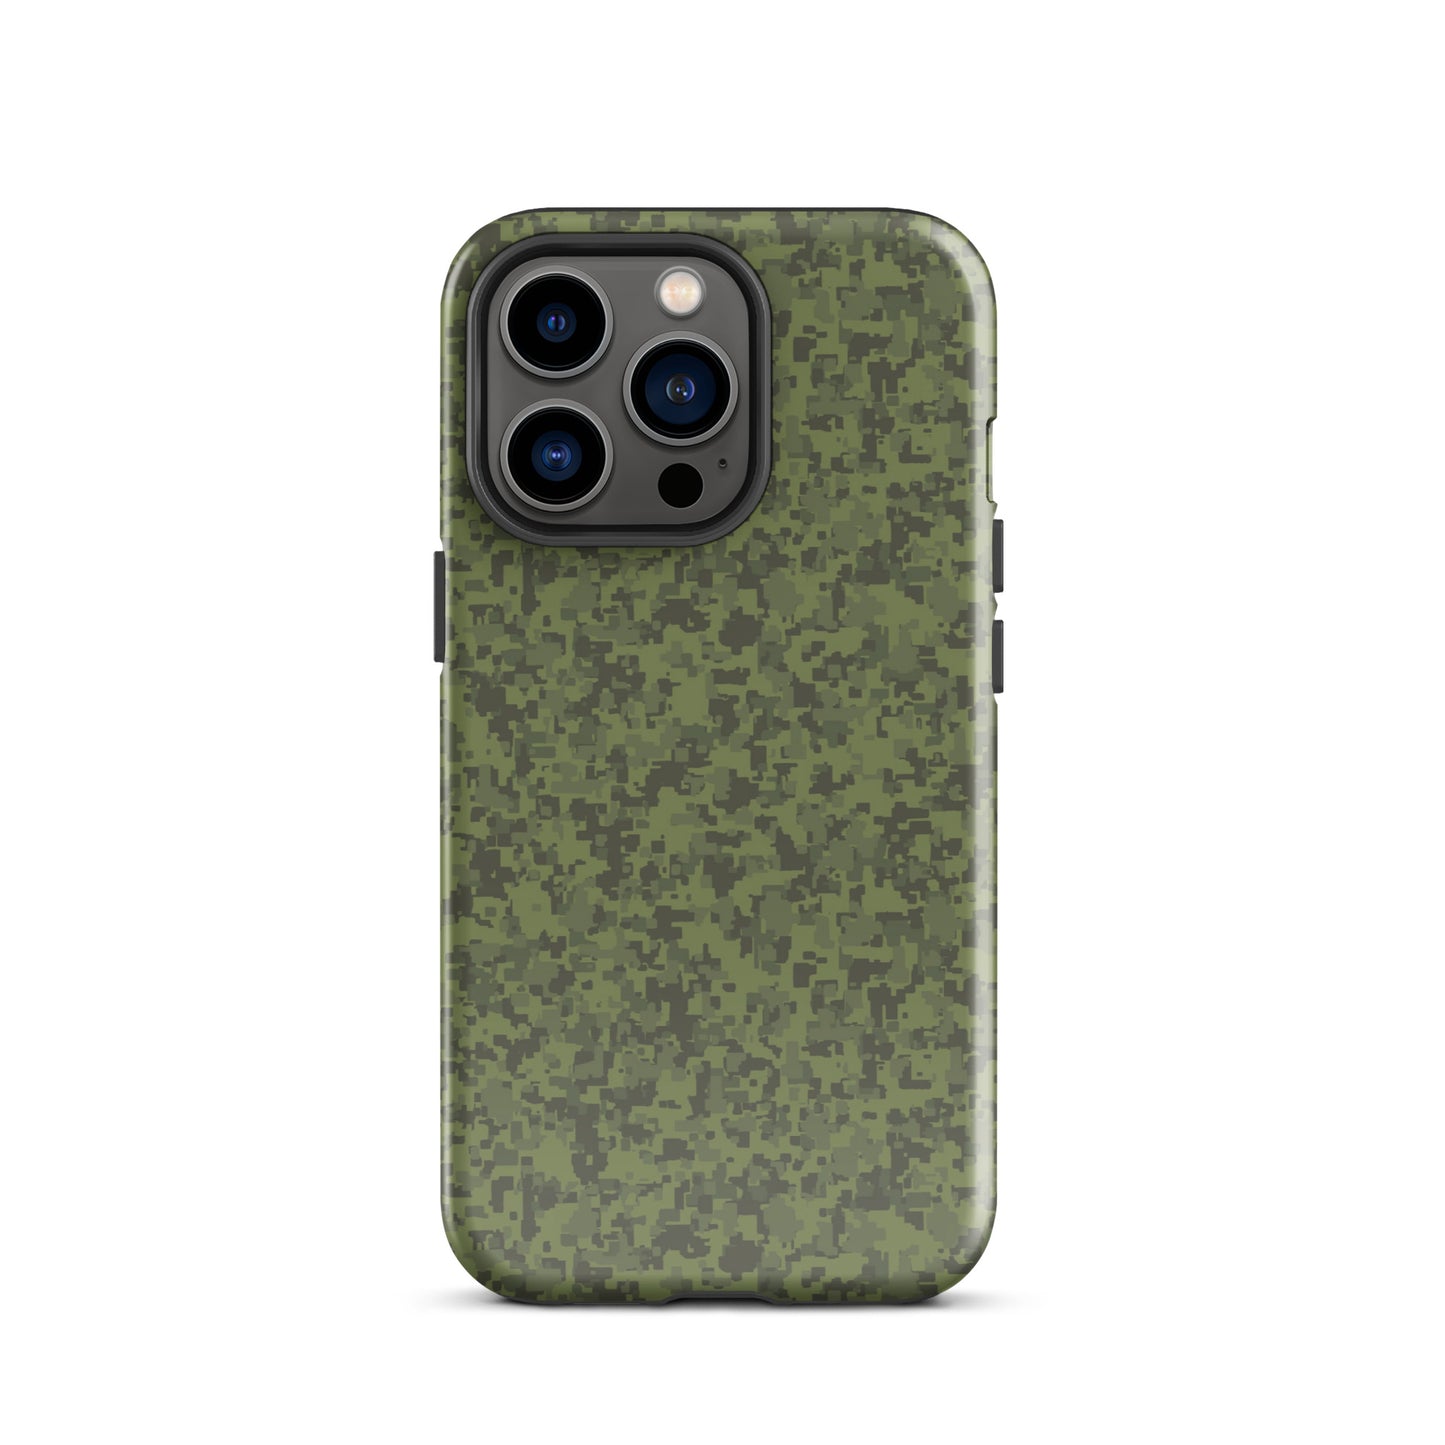 Canyon Sniper - iPhone Tough Case